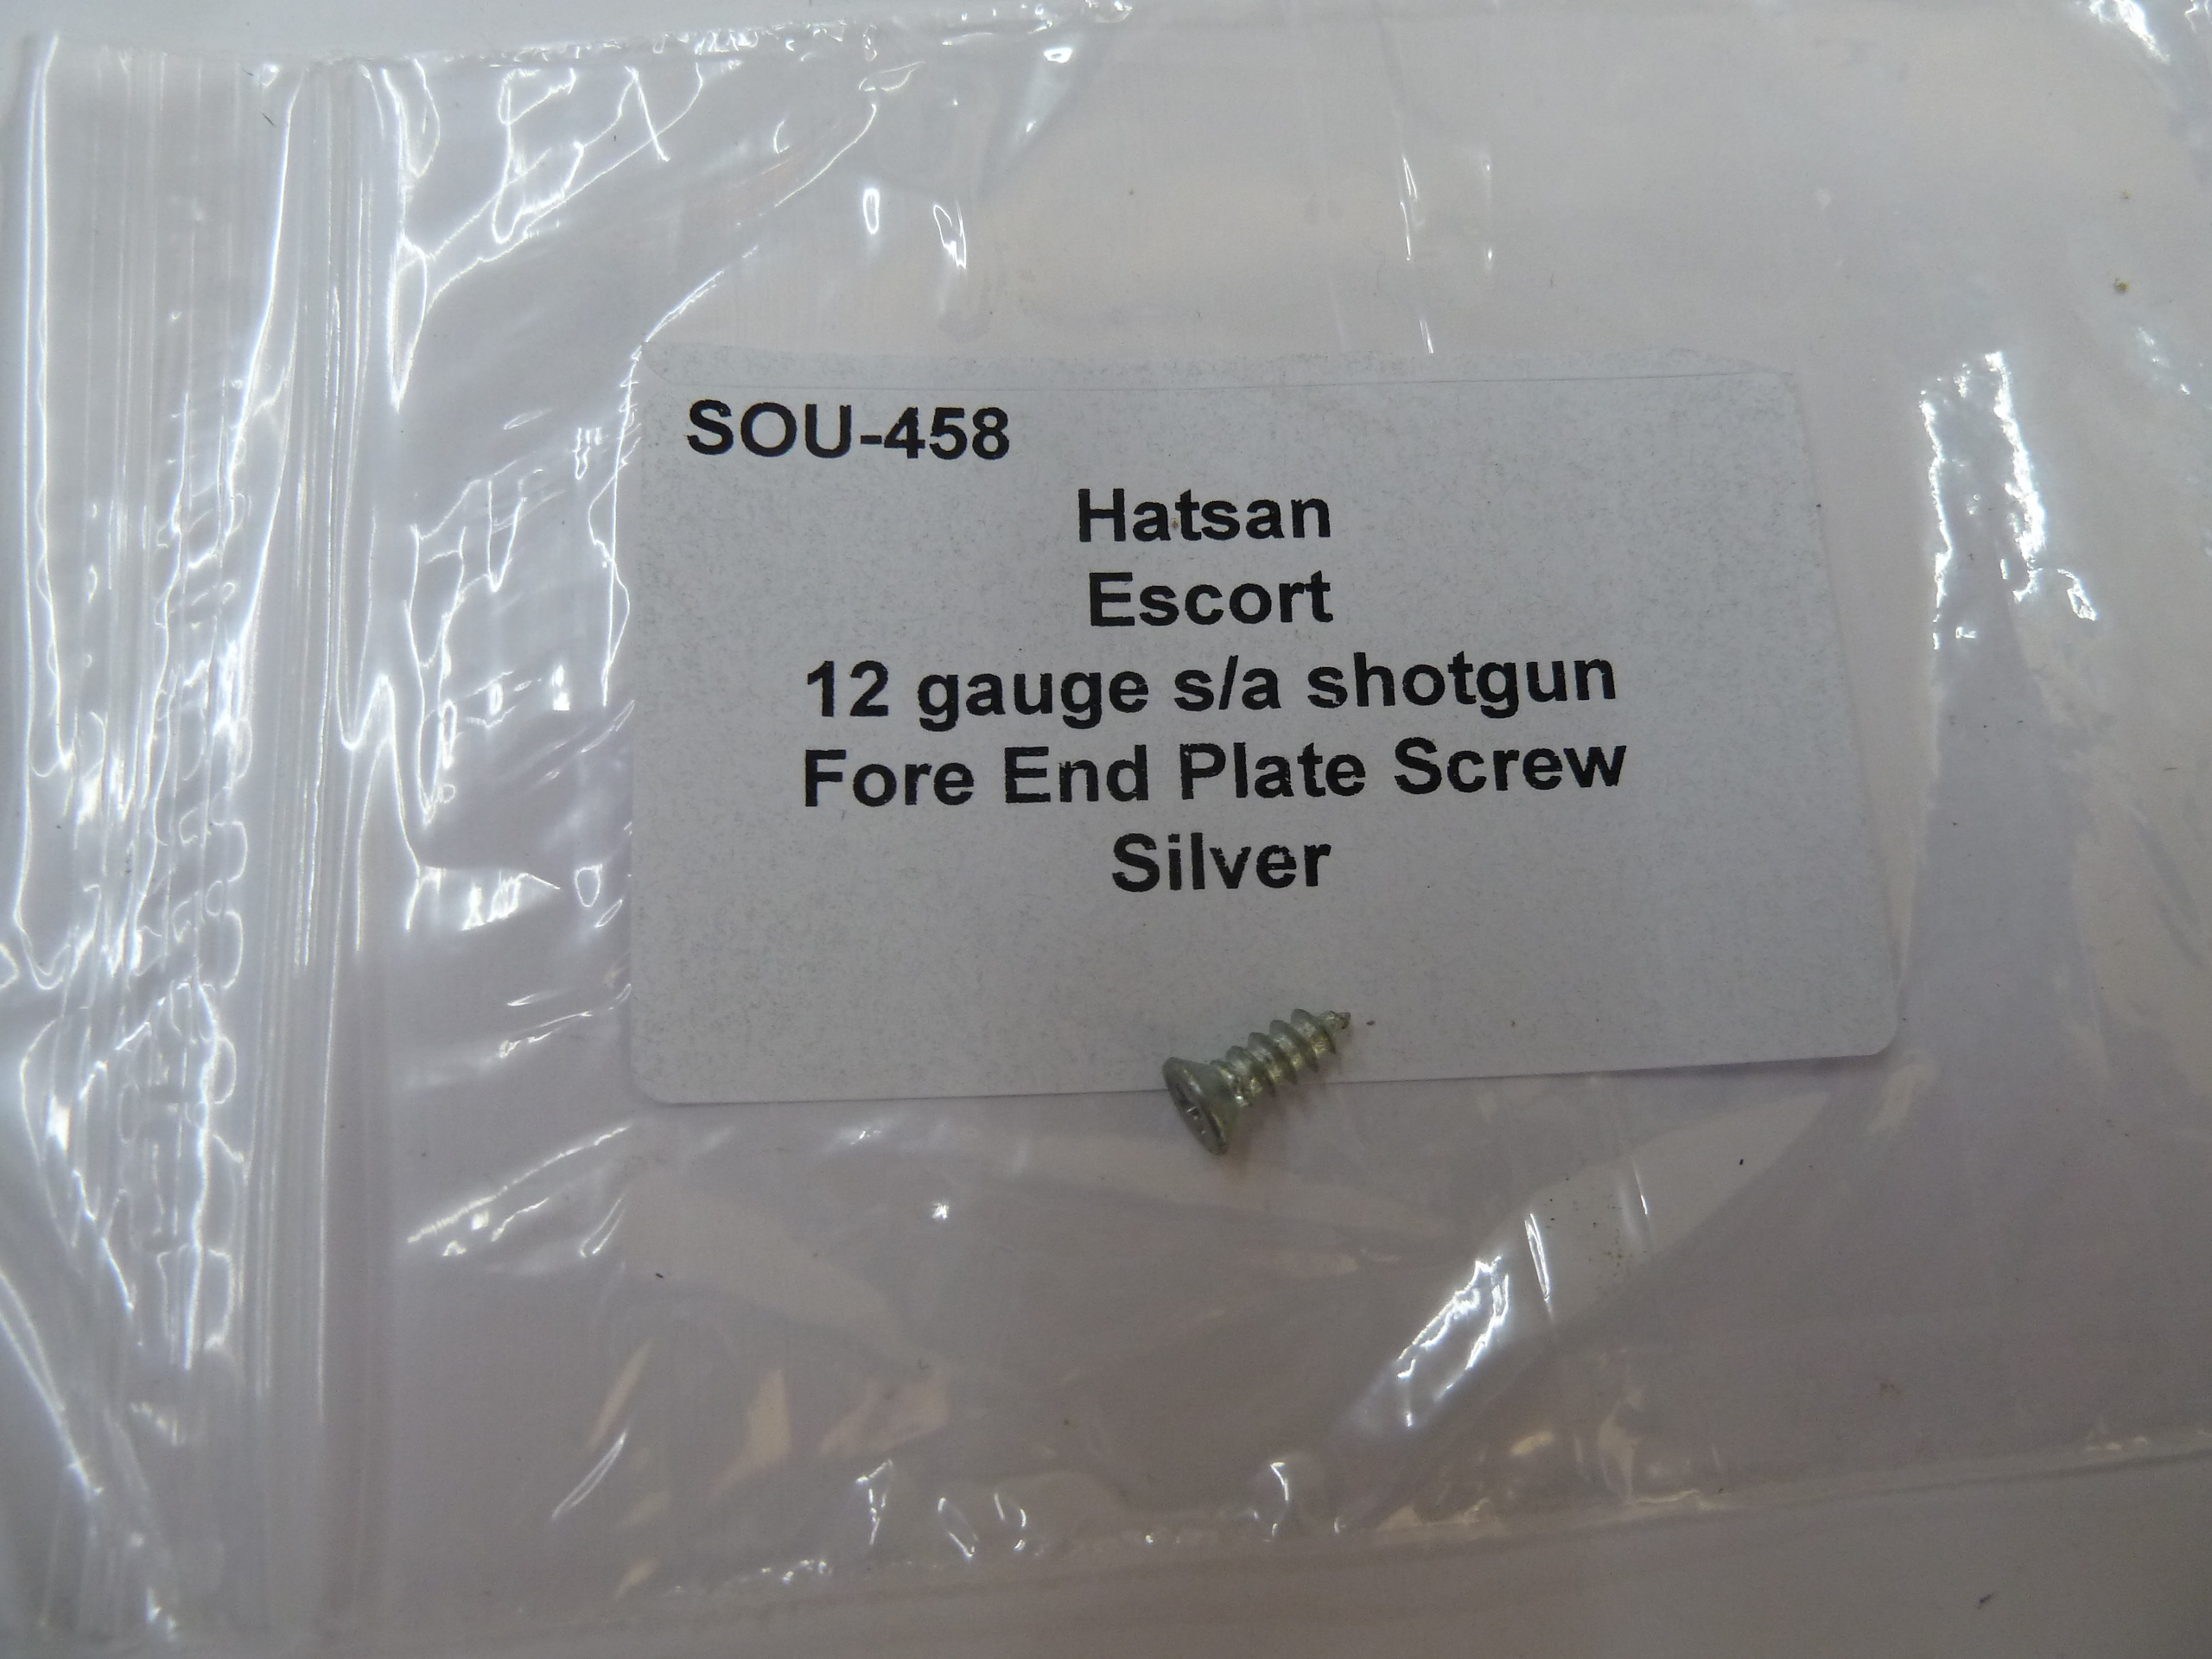 SOU-458 Hatsan Escort 12 gauge sa shgotgun forend plate screw silver